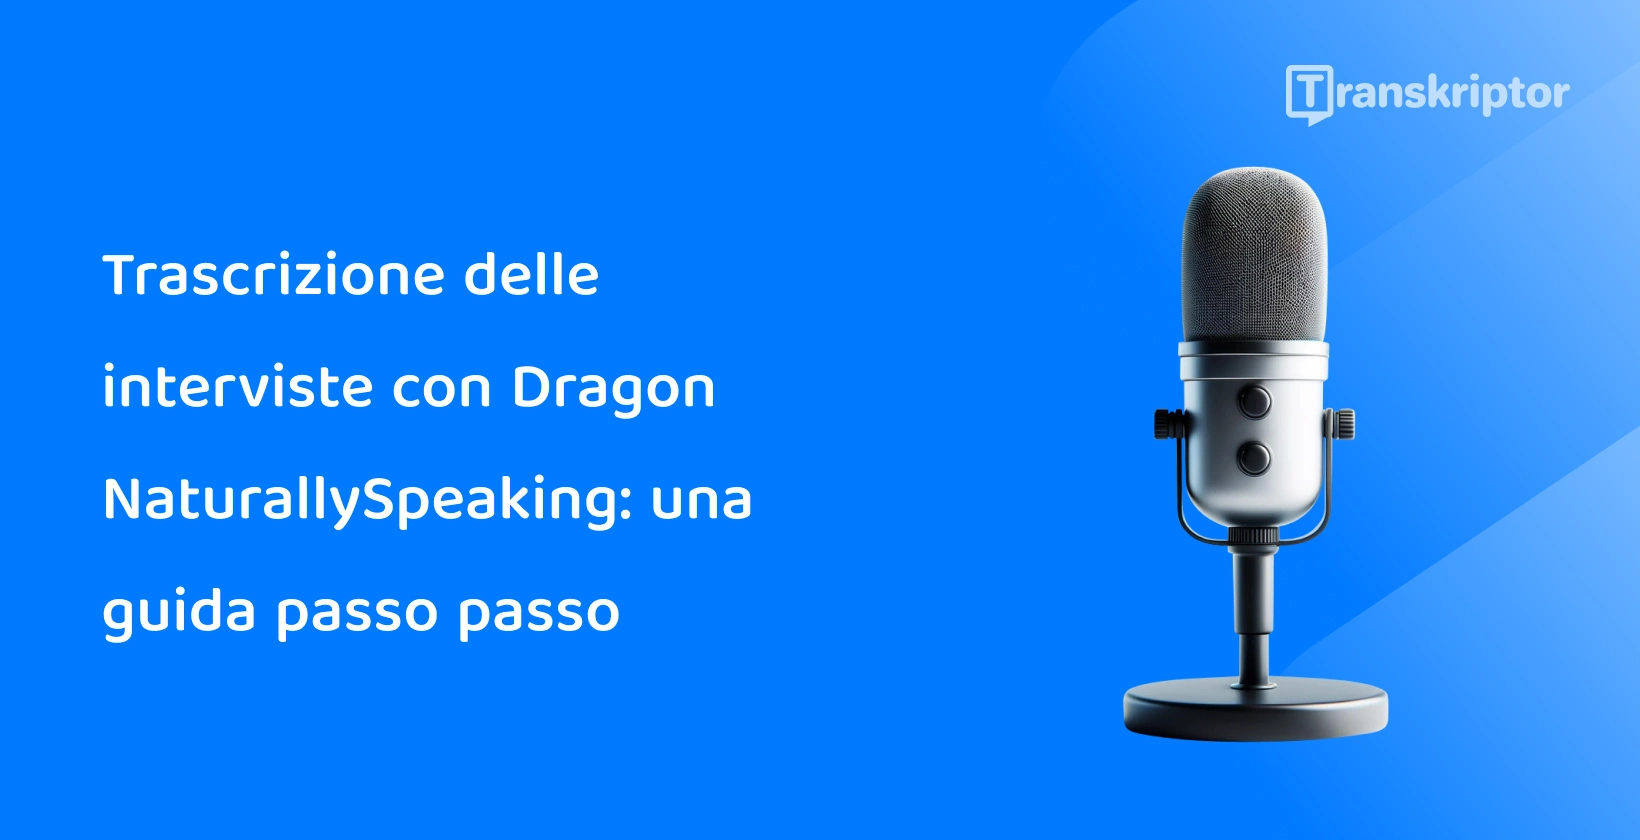 Microfono che rappresenta il ruolo di Dragon NaturallySpeaking nella trascrizione delle interviste, con particolare attenzione all'approccio guidato.